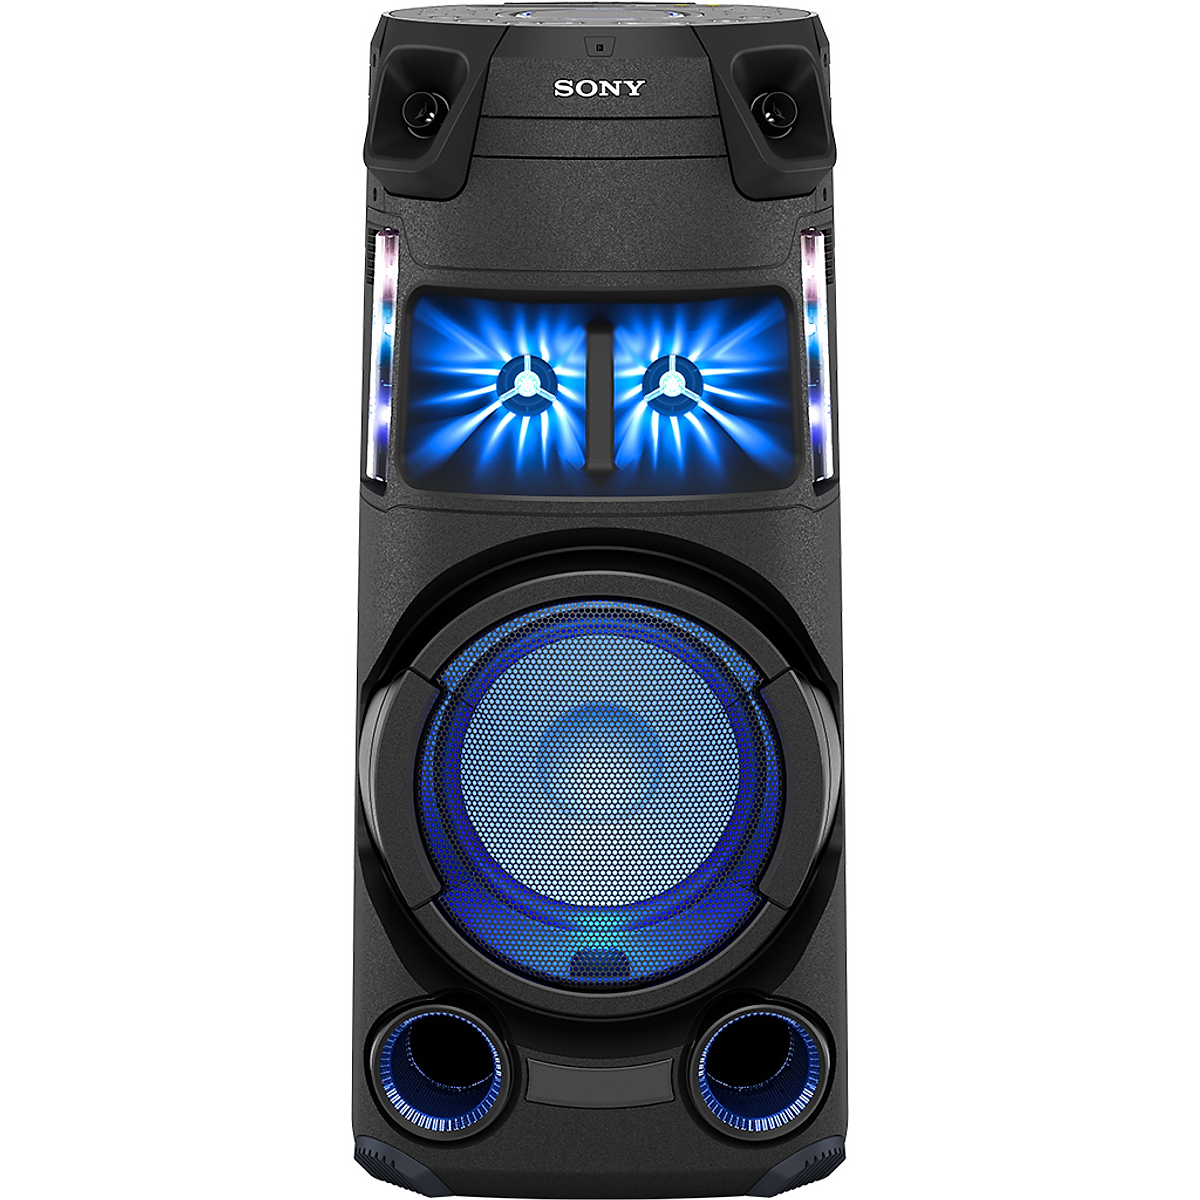 Dàn âm thanh Hifi Sony MHC-V43D - Hàng chính hãng